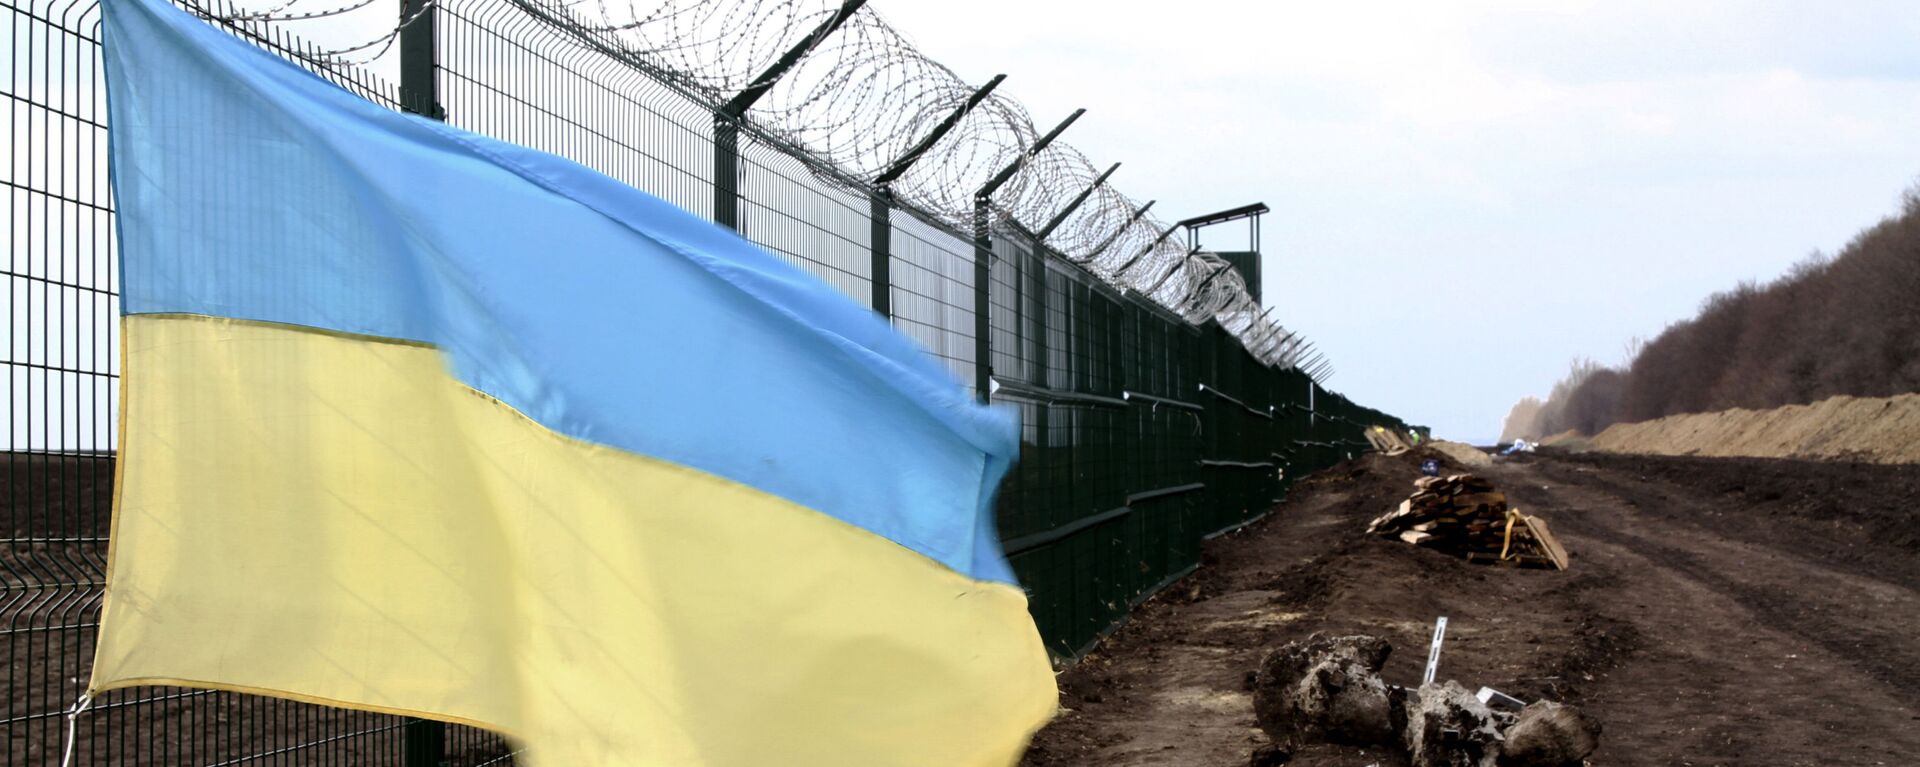  Украинский государственный флаг прикреплен к забору на украинско-российской границе - Sputnik Таджикистан, 1920, 22.04.2021